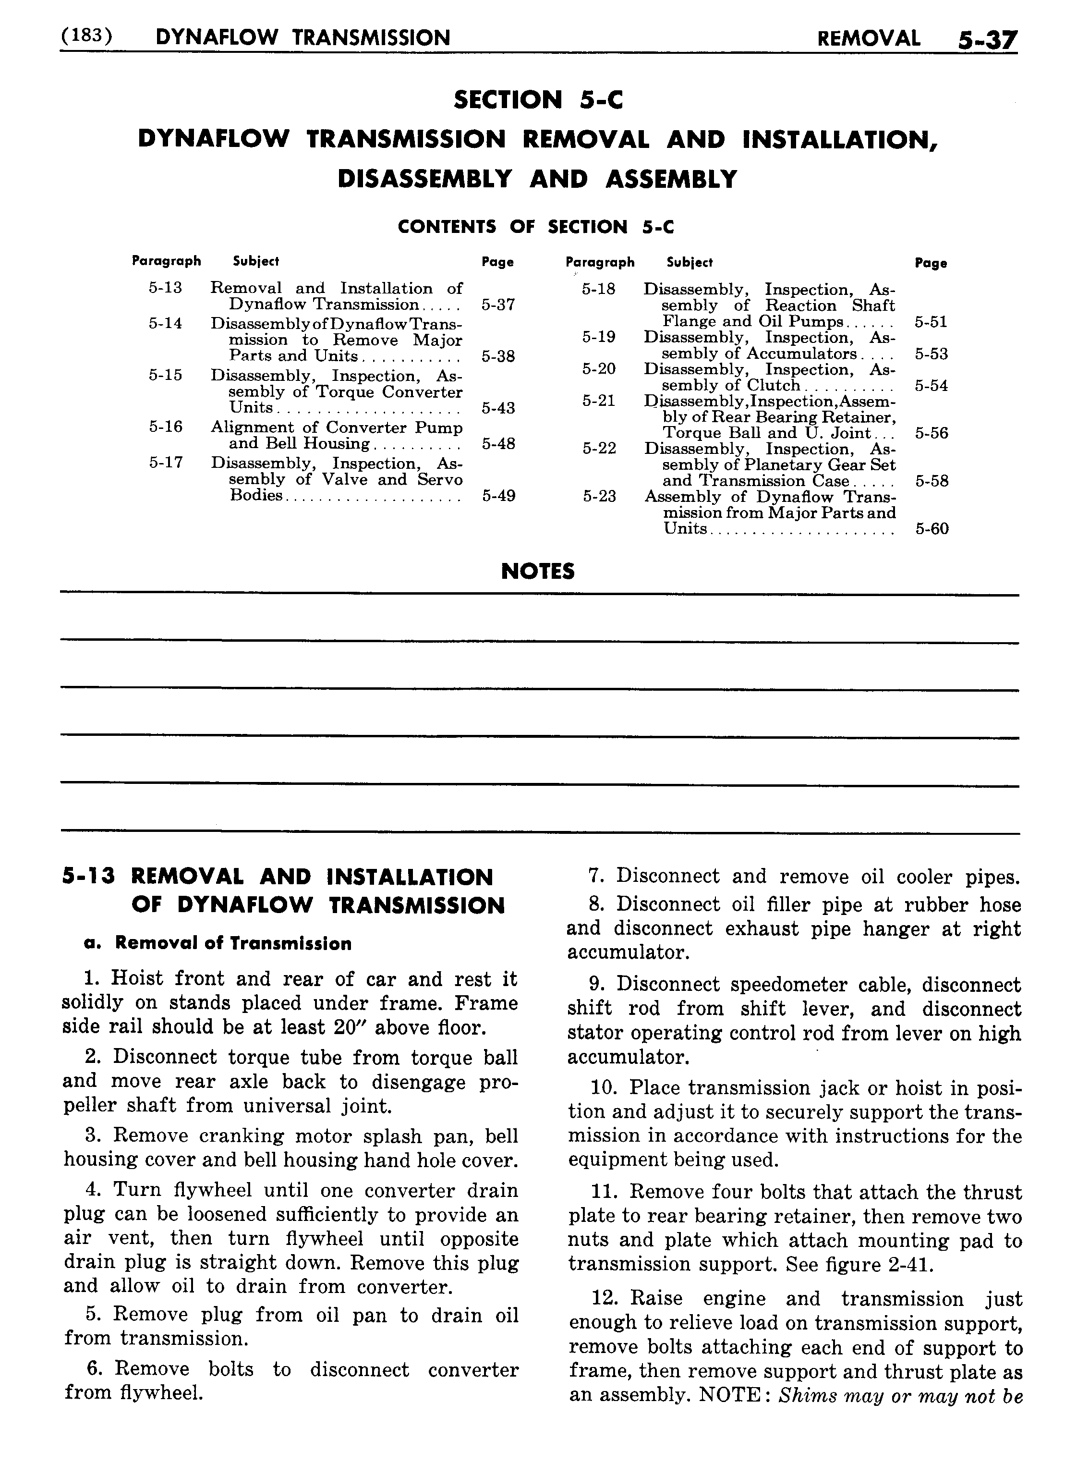 n_06 1956 Buick Shop Manual - Dynaflow-037-037.jpg